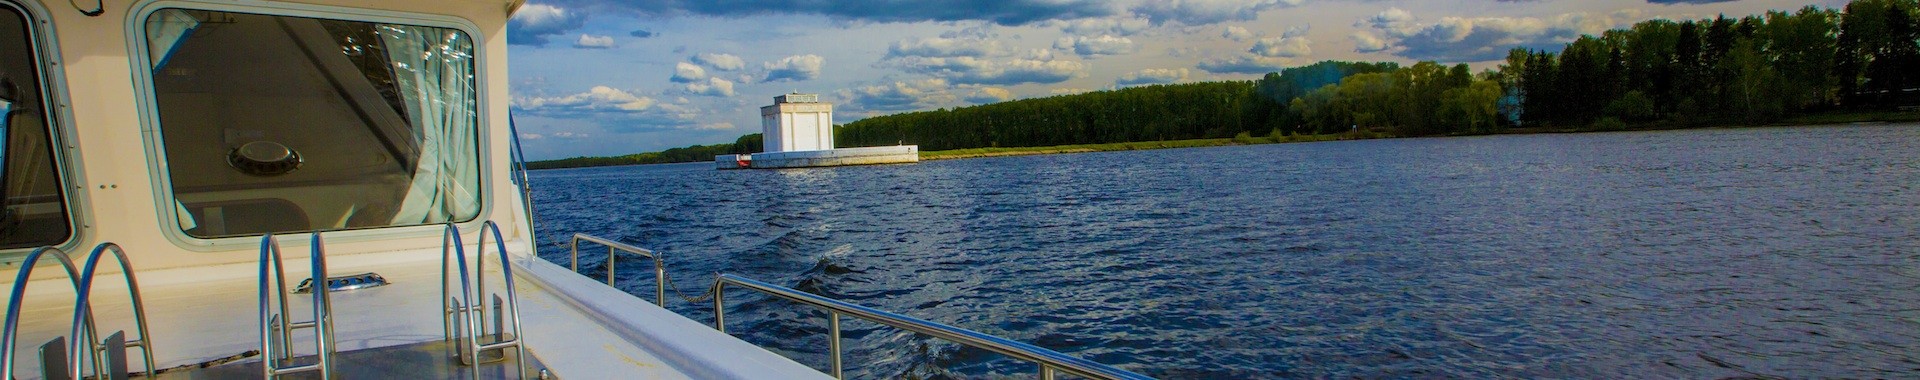 Аренда моторных яхт в Москве и Подмосковье, прокат тихоходных рычных катеров (пенишетов)